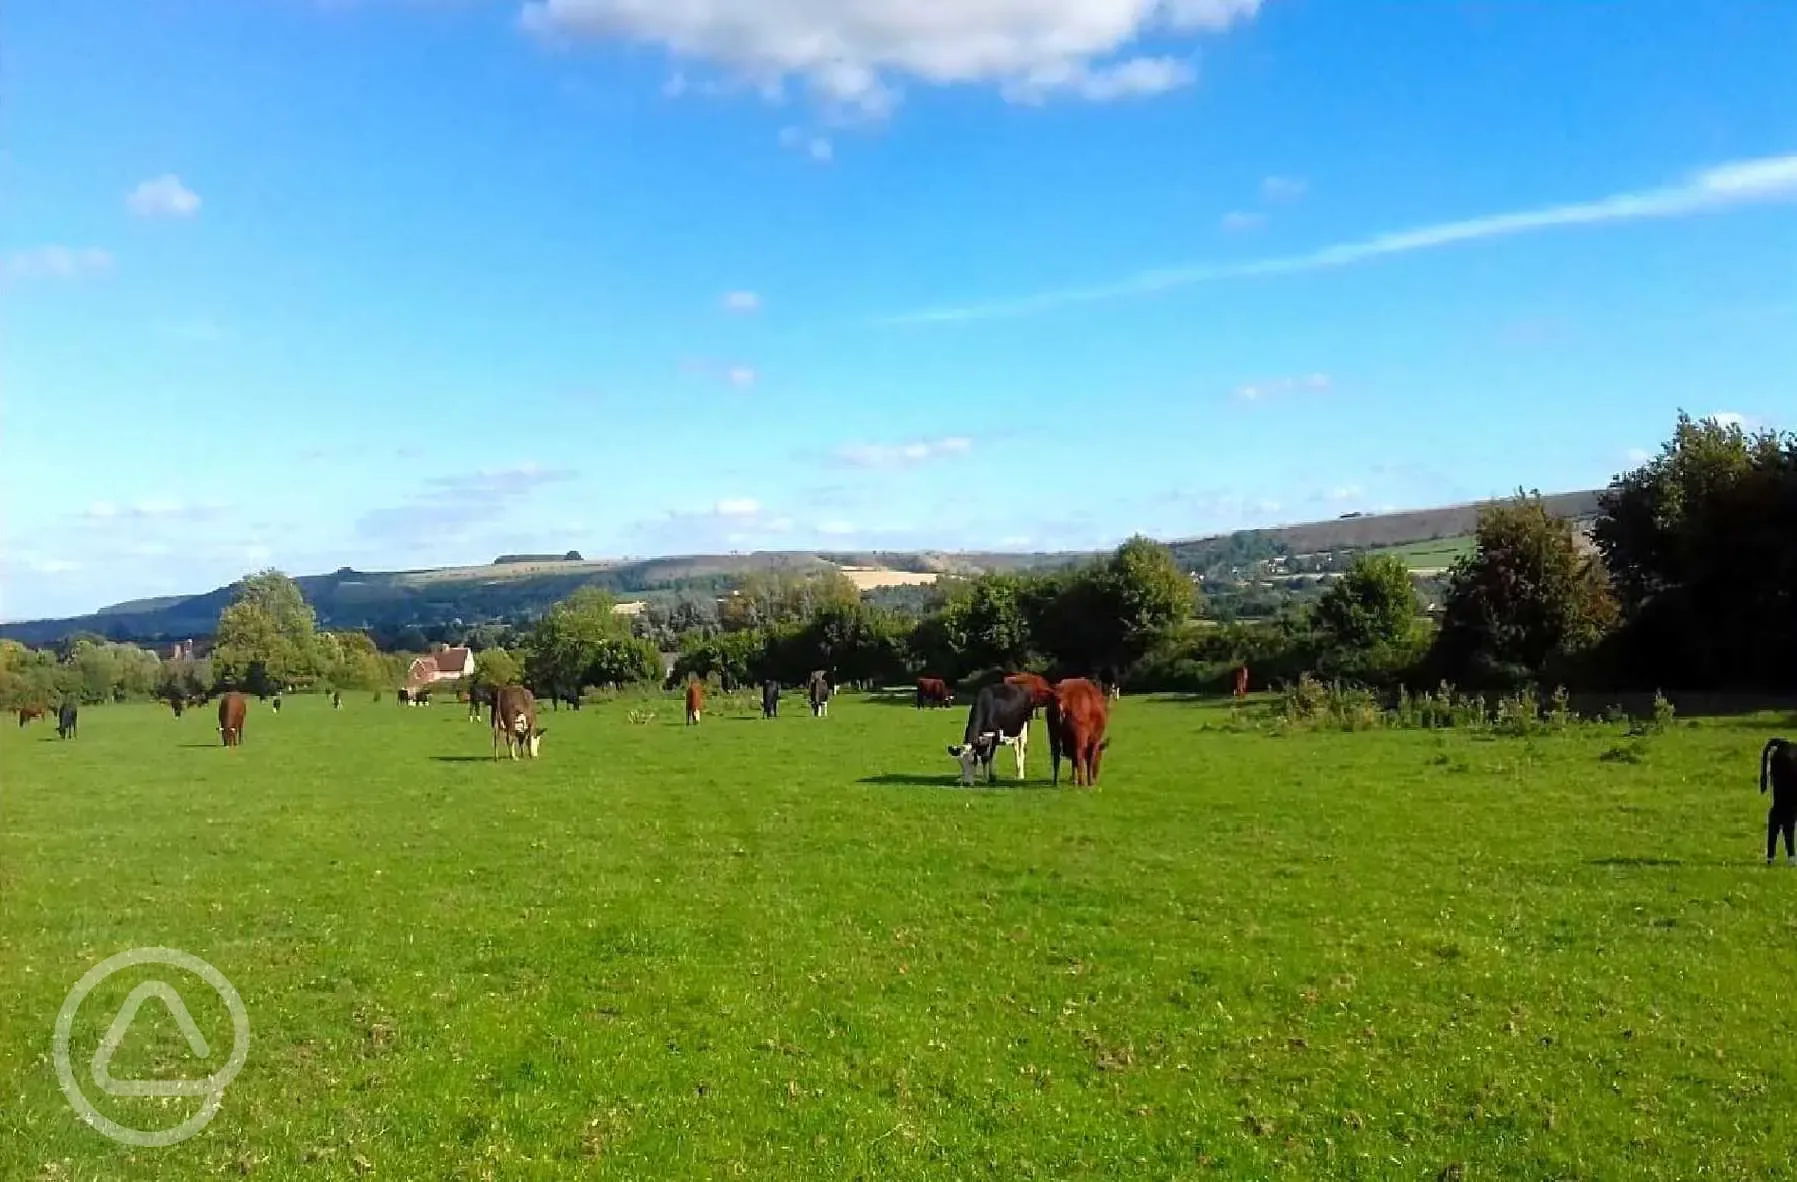 Cattle in nearby fields